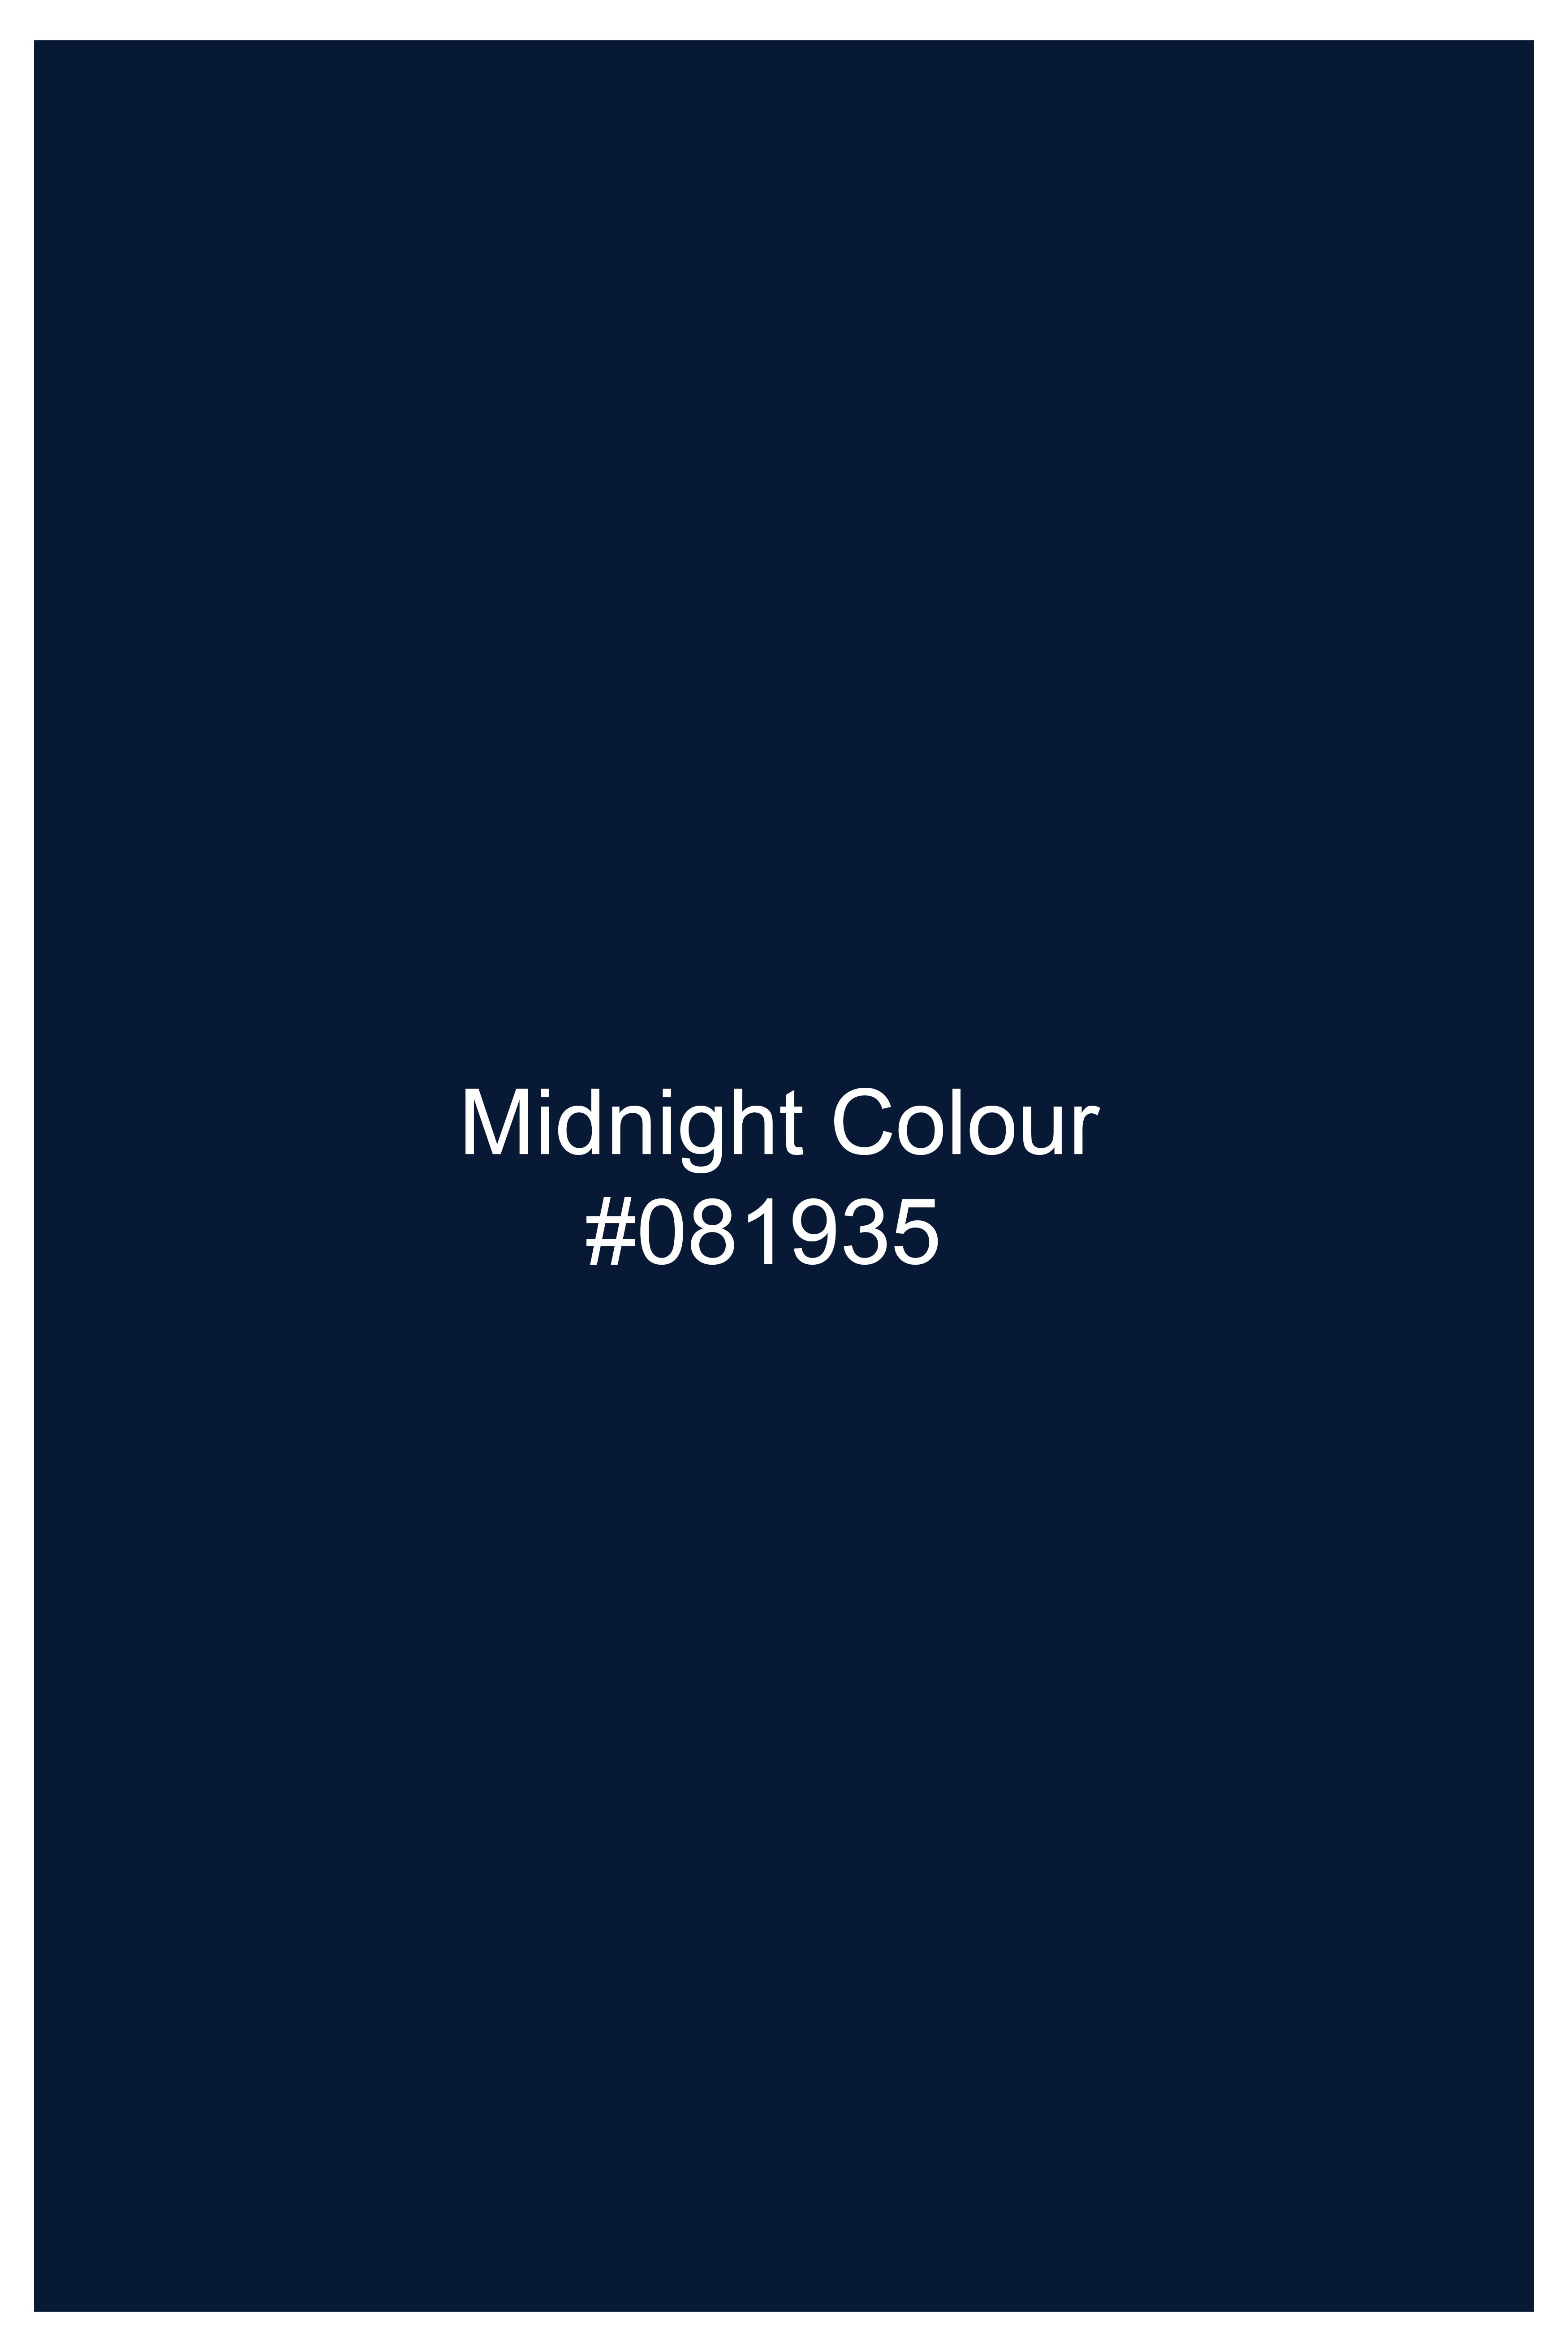 Midnight Blue Premium Cotton Shorts SR371-28, SR371-30, SR371-32, SR371-34, SR371-36, SR371-38, SR371-40, SR371-42, SR371-44